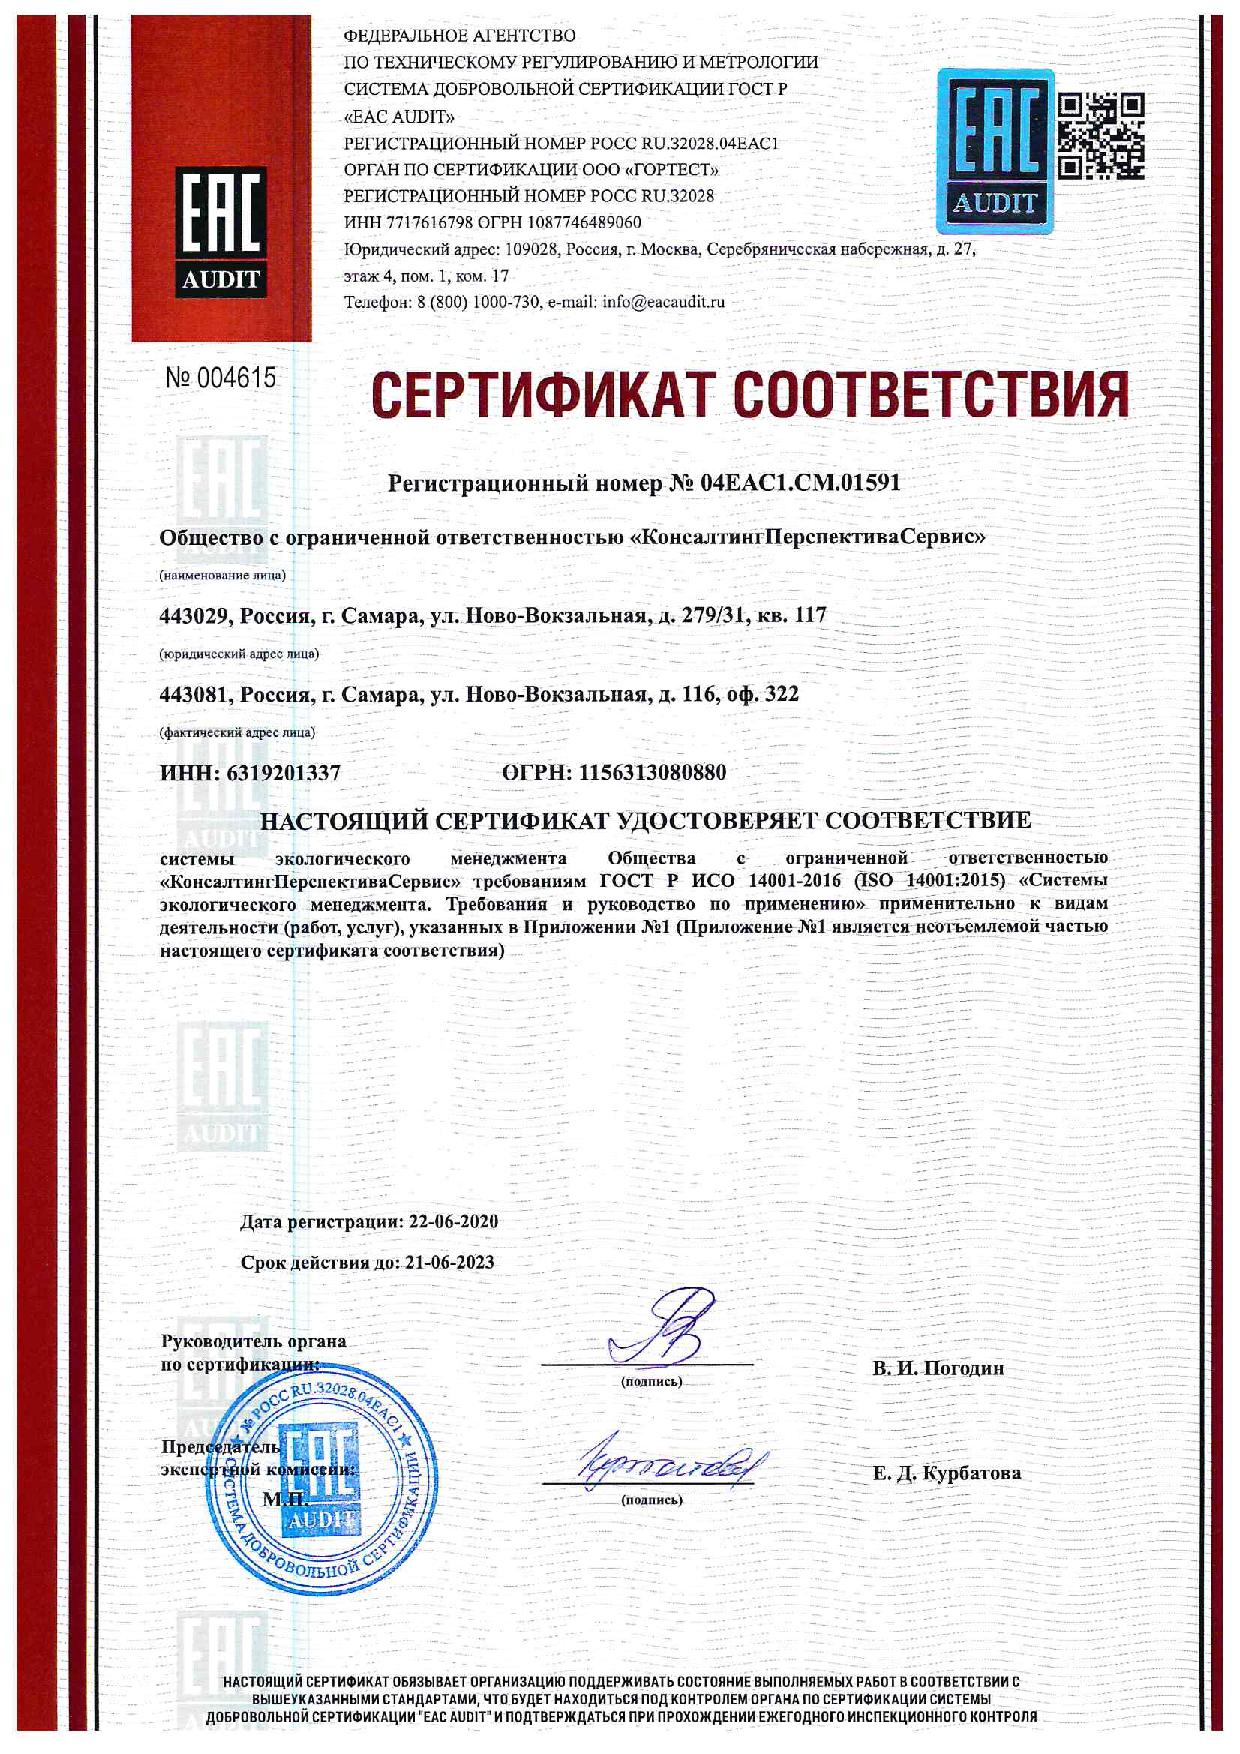 Сертификат соответствия системы экологического менеджмента